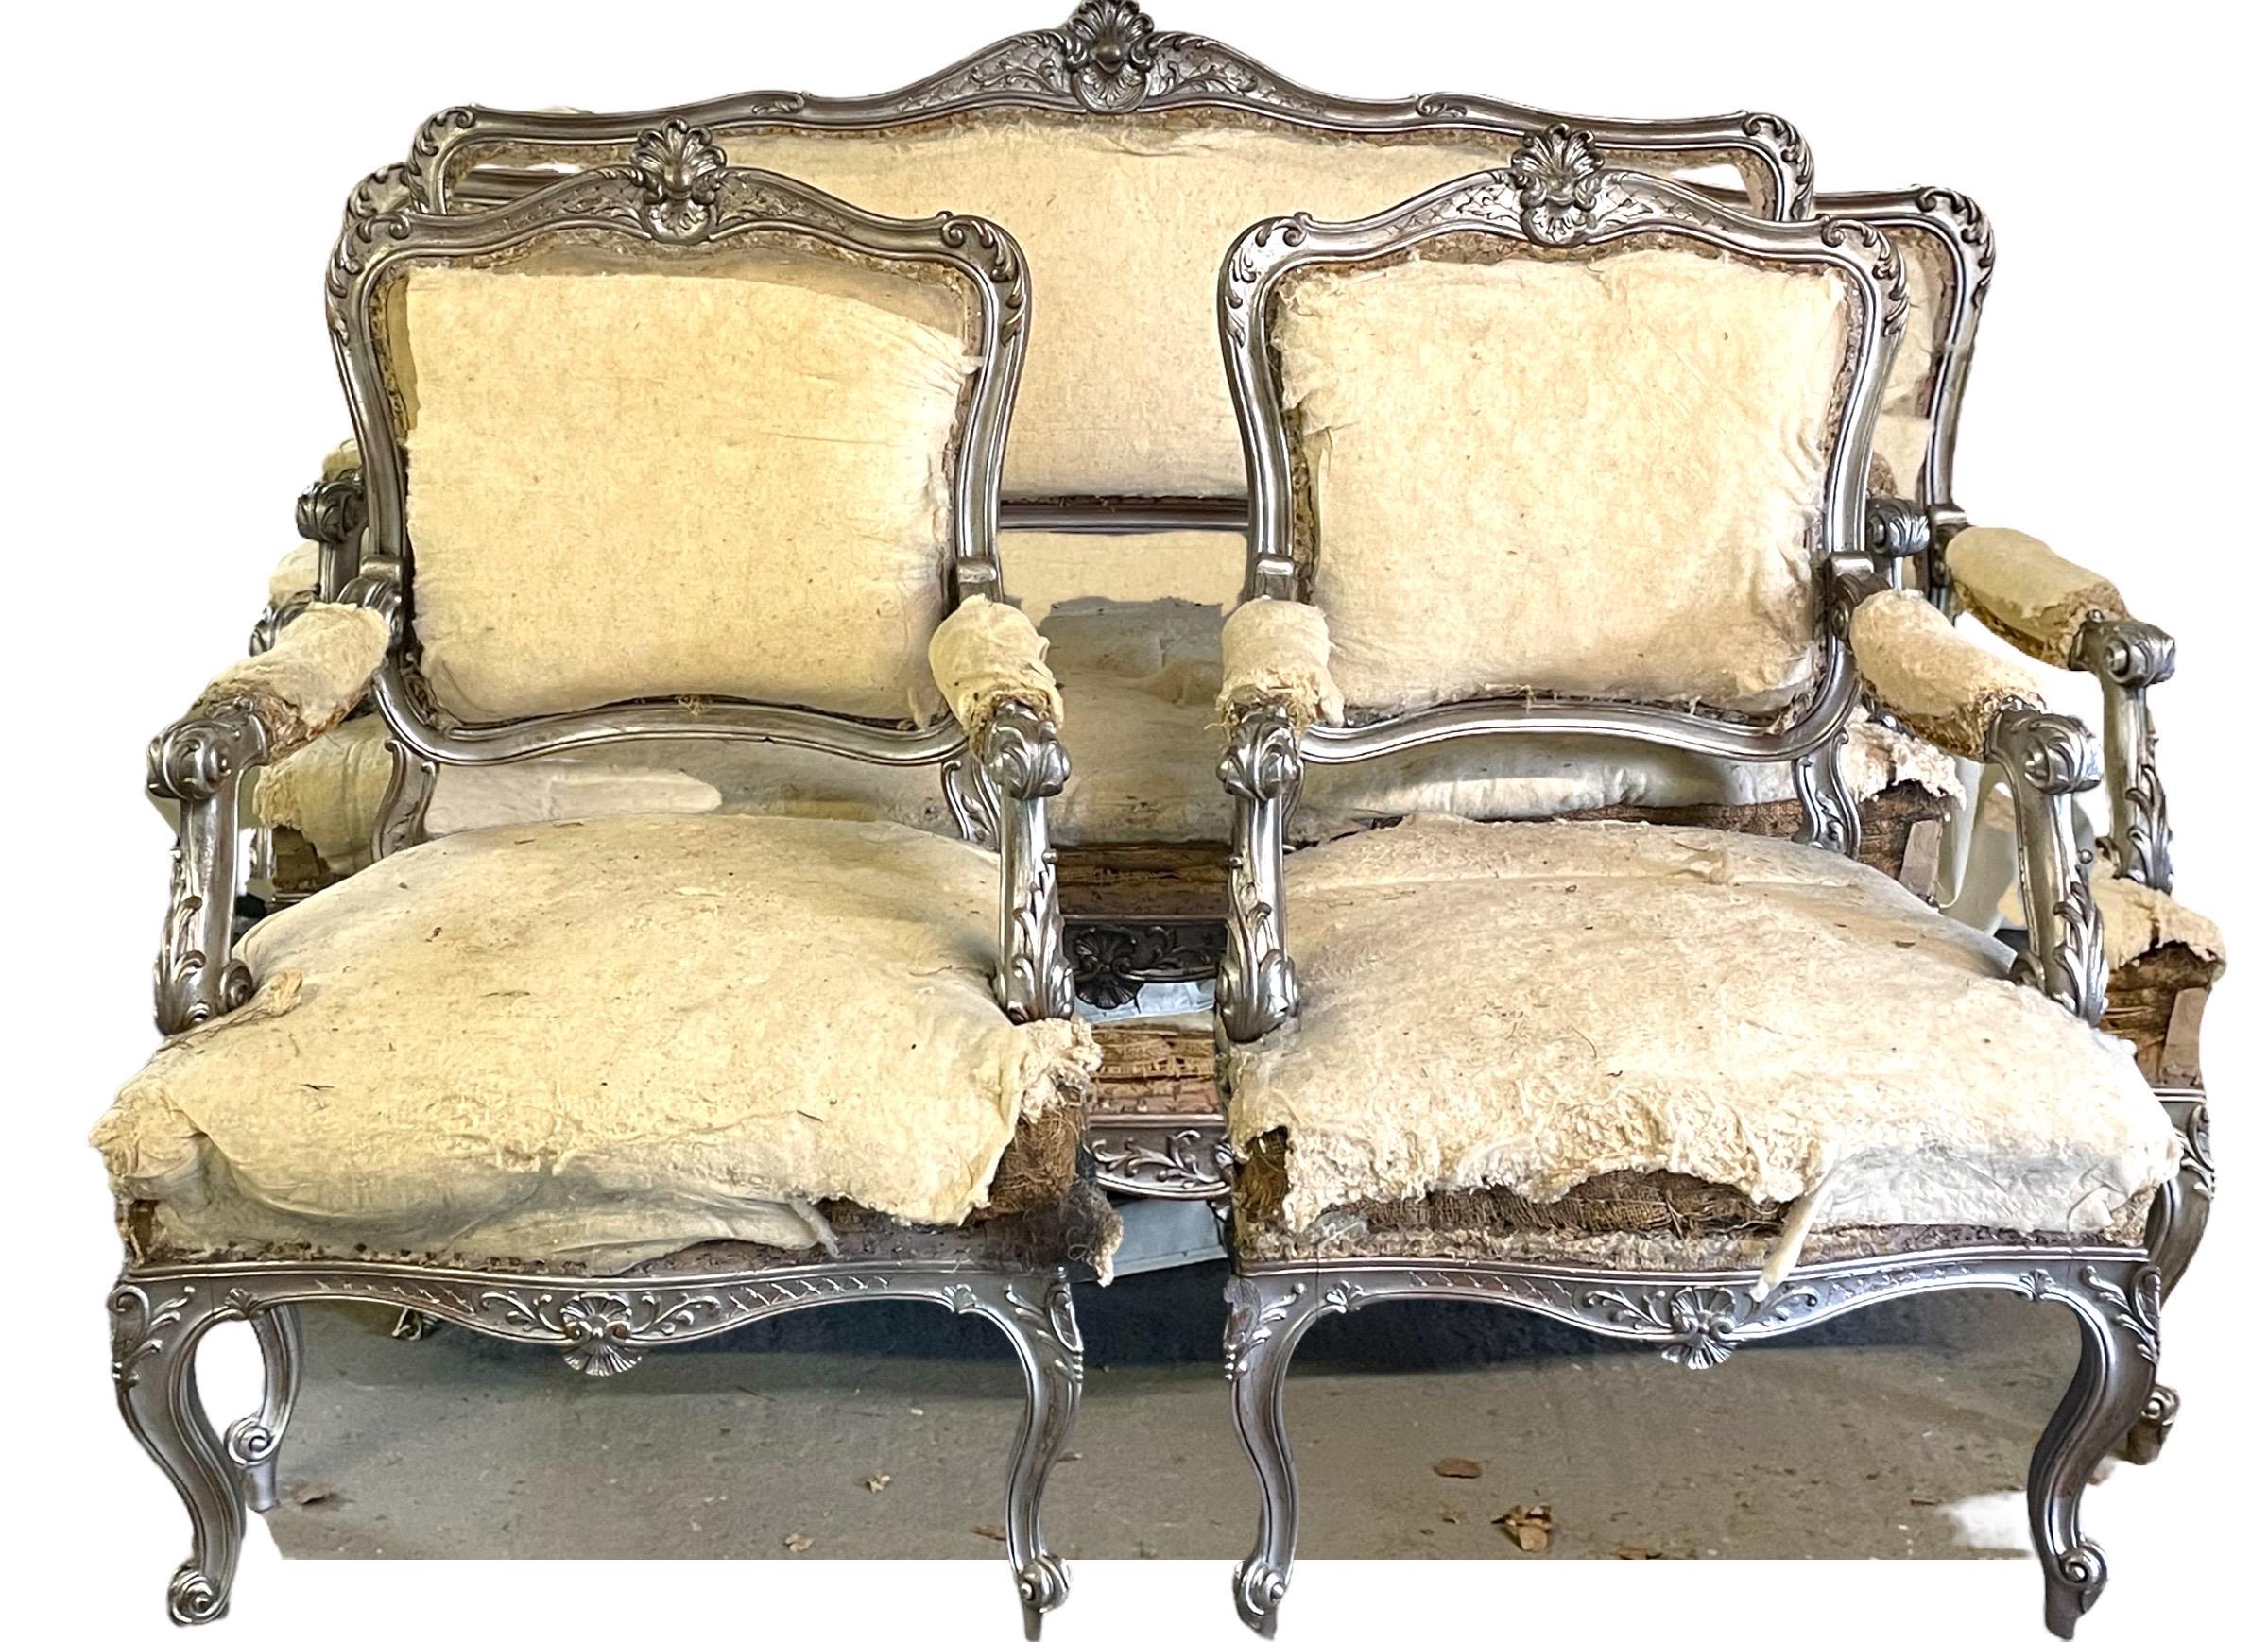 Französisch Louis XV-Stil Silber Giltwood geschnitzt dreiteilige Salon oder Salon-Suite
Sehr feine ursprüngliche Nussbaum Rahmen dreiteilige Salon-Suite, umfasst ein Sofa und zwei Sessel, die Suite wurde teilweise zurück und ist bereit,